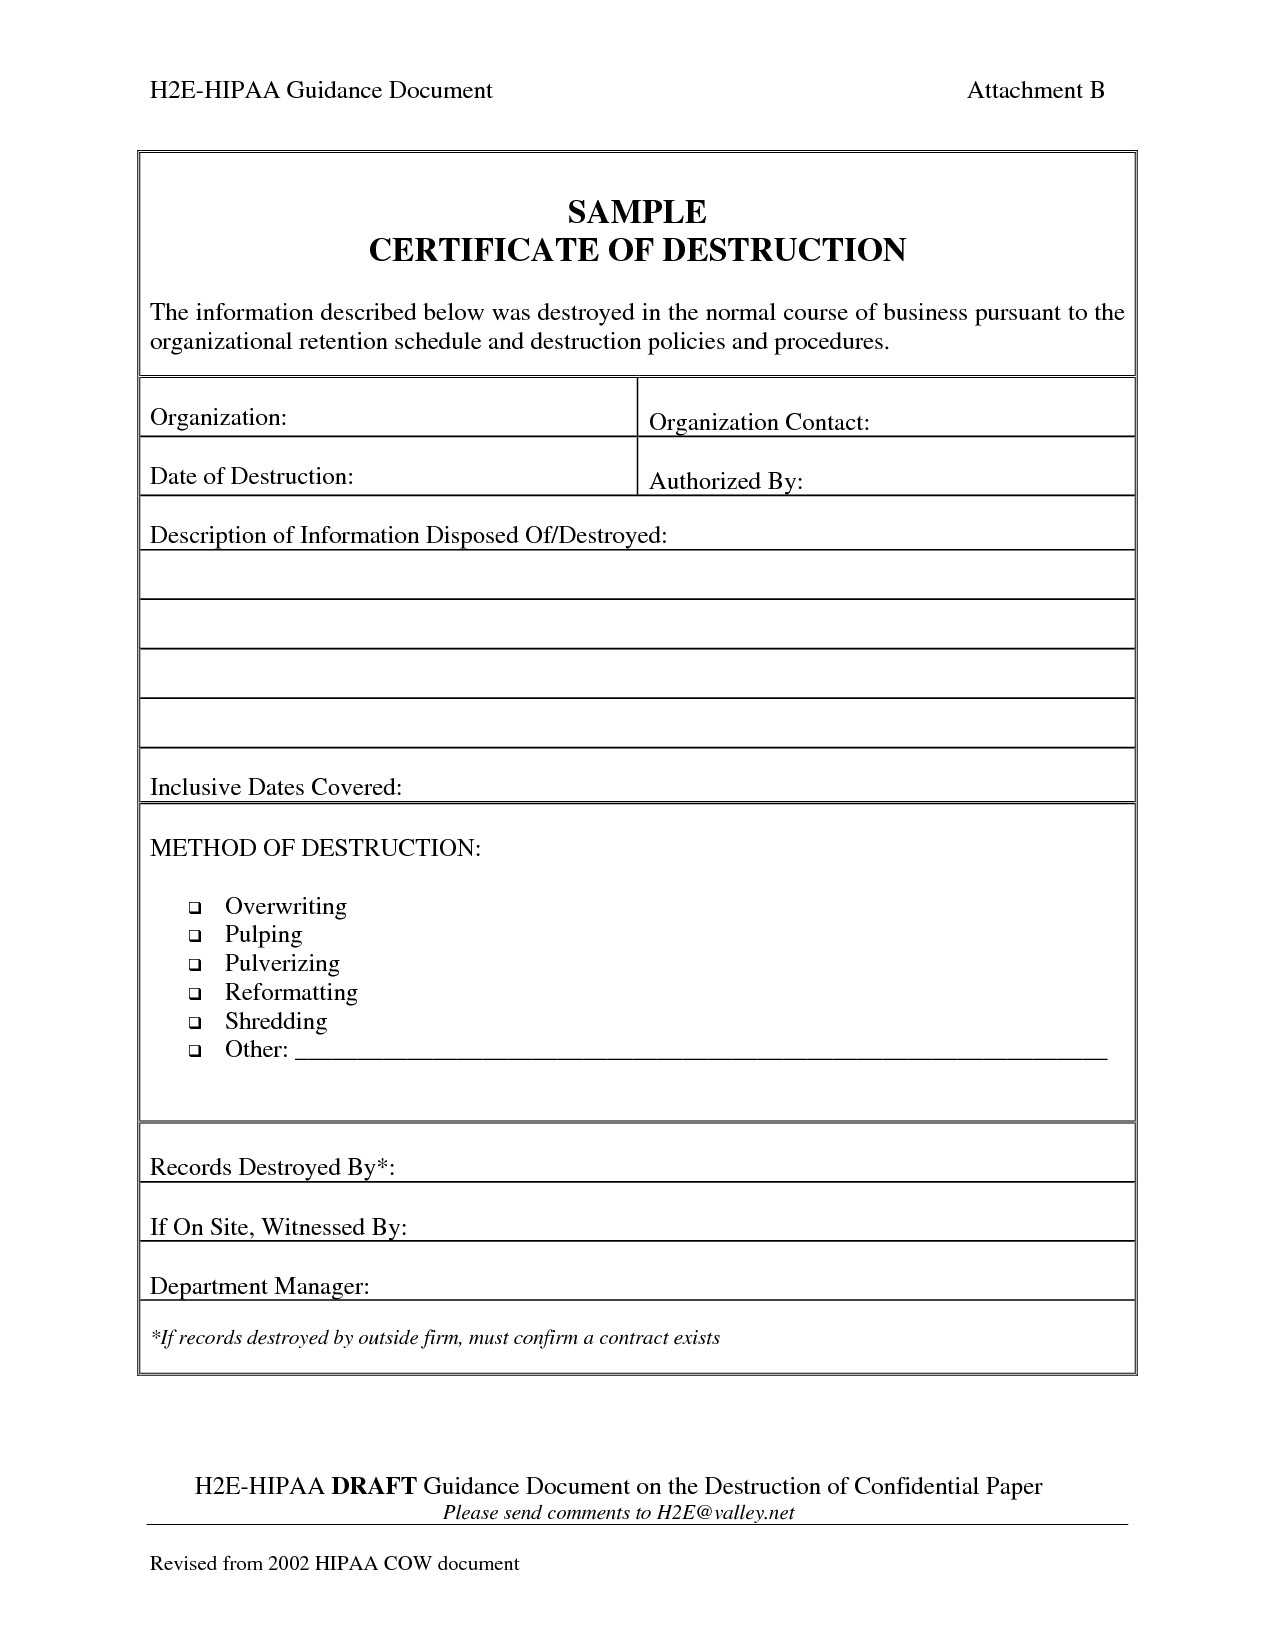 001 Template Ideas Certificate Of Destruction Frightening Data for Destruction Certificate Template